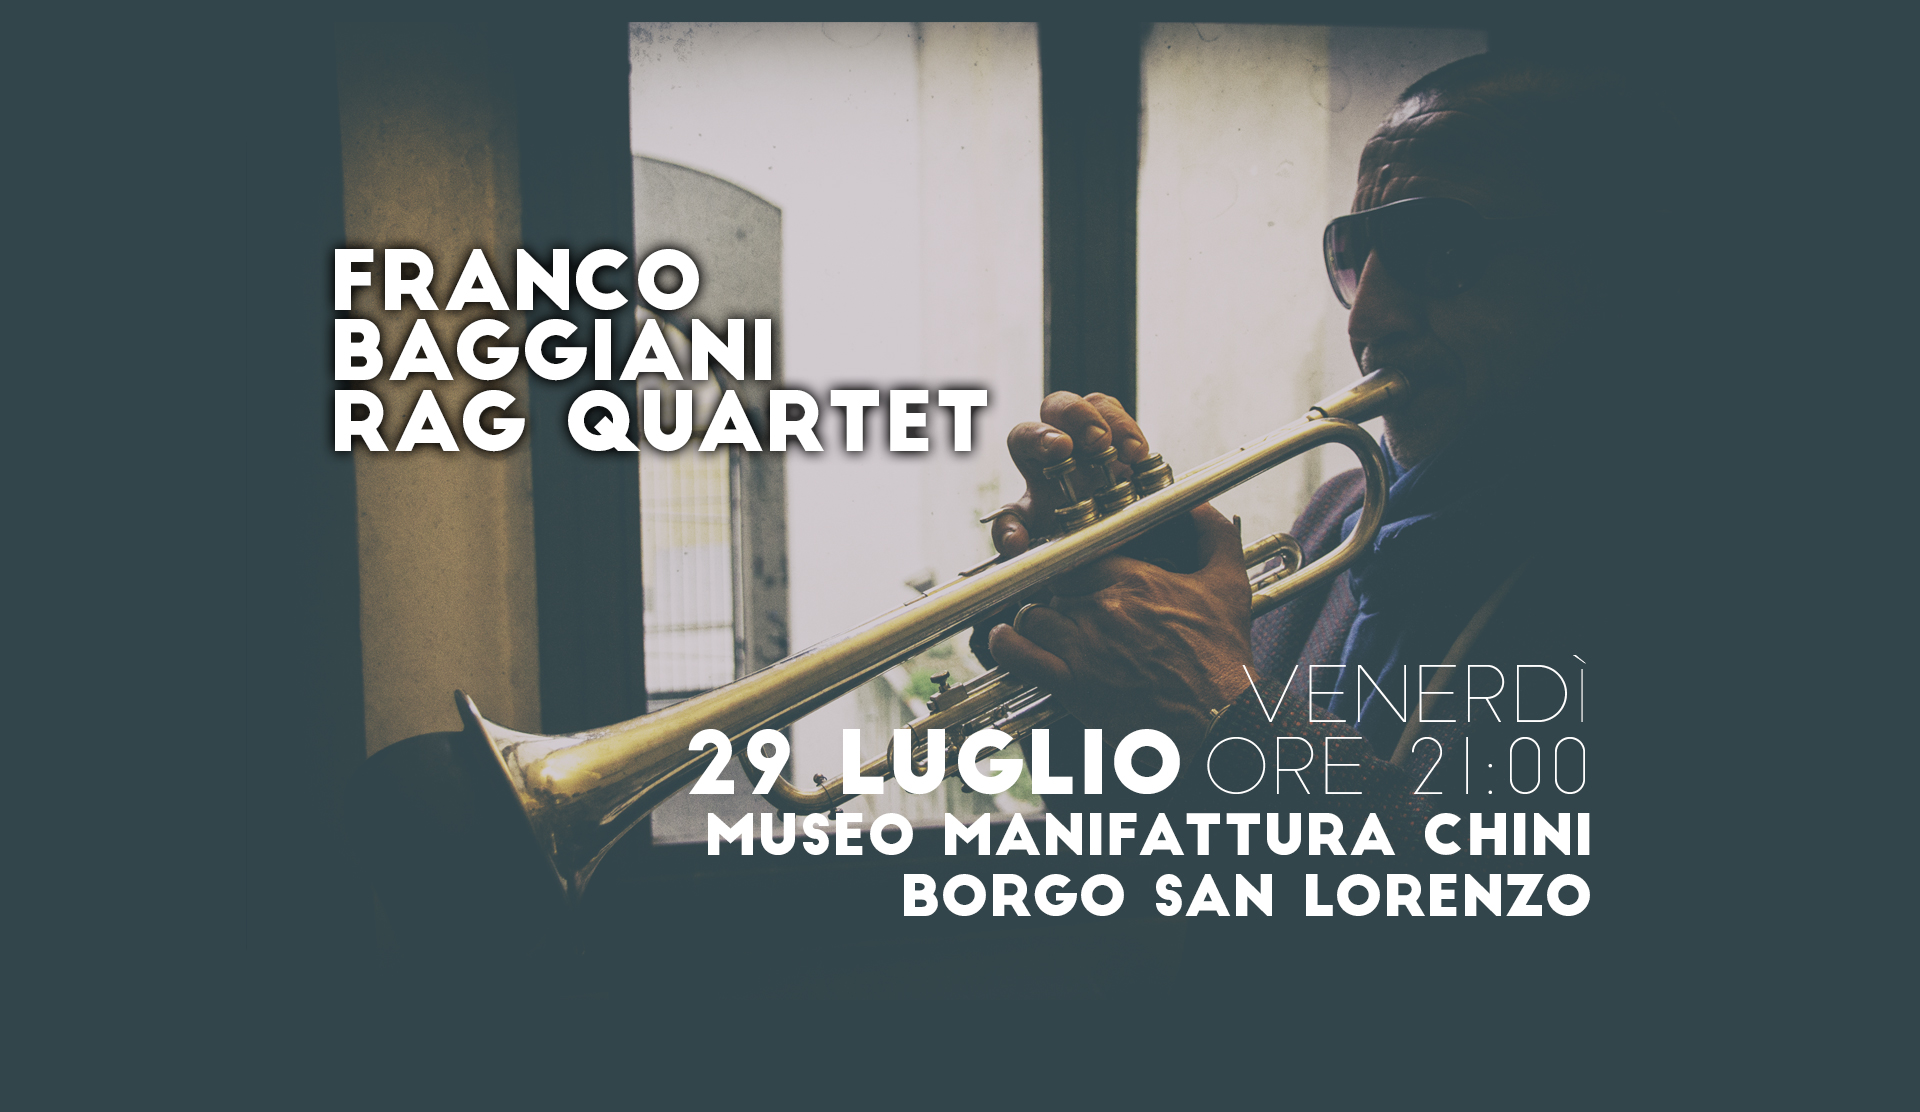 Franco Baggiani Rag Quartet Venerdì 29 Luglio ore 21 Museo Manifattura Chini, Borgo S. Lorenzo